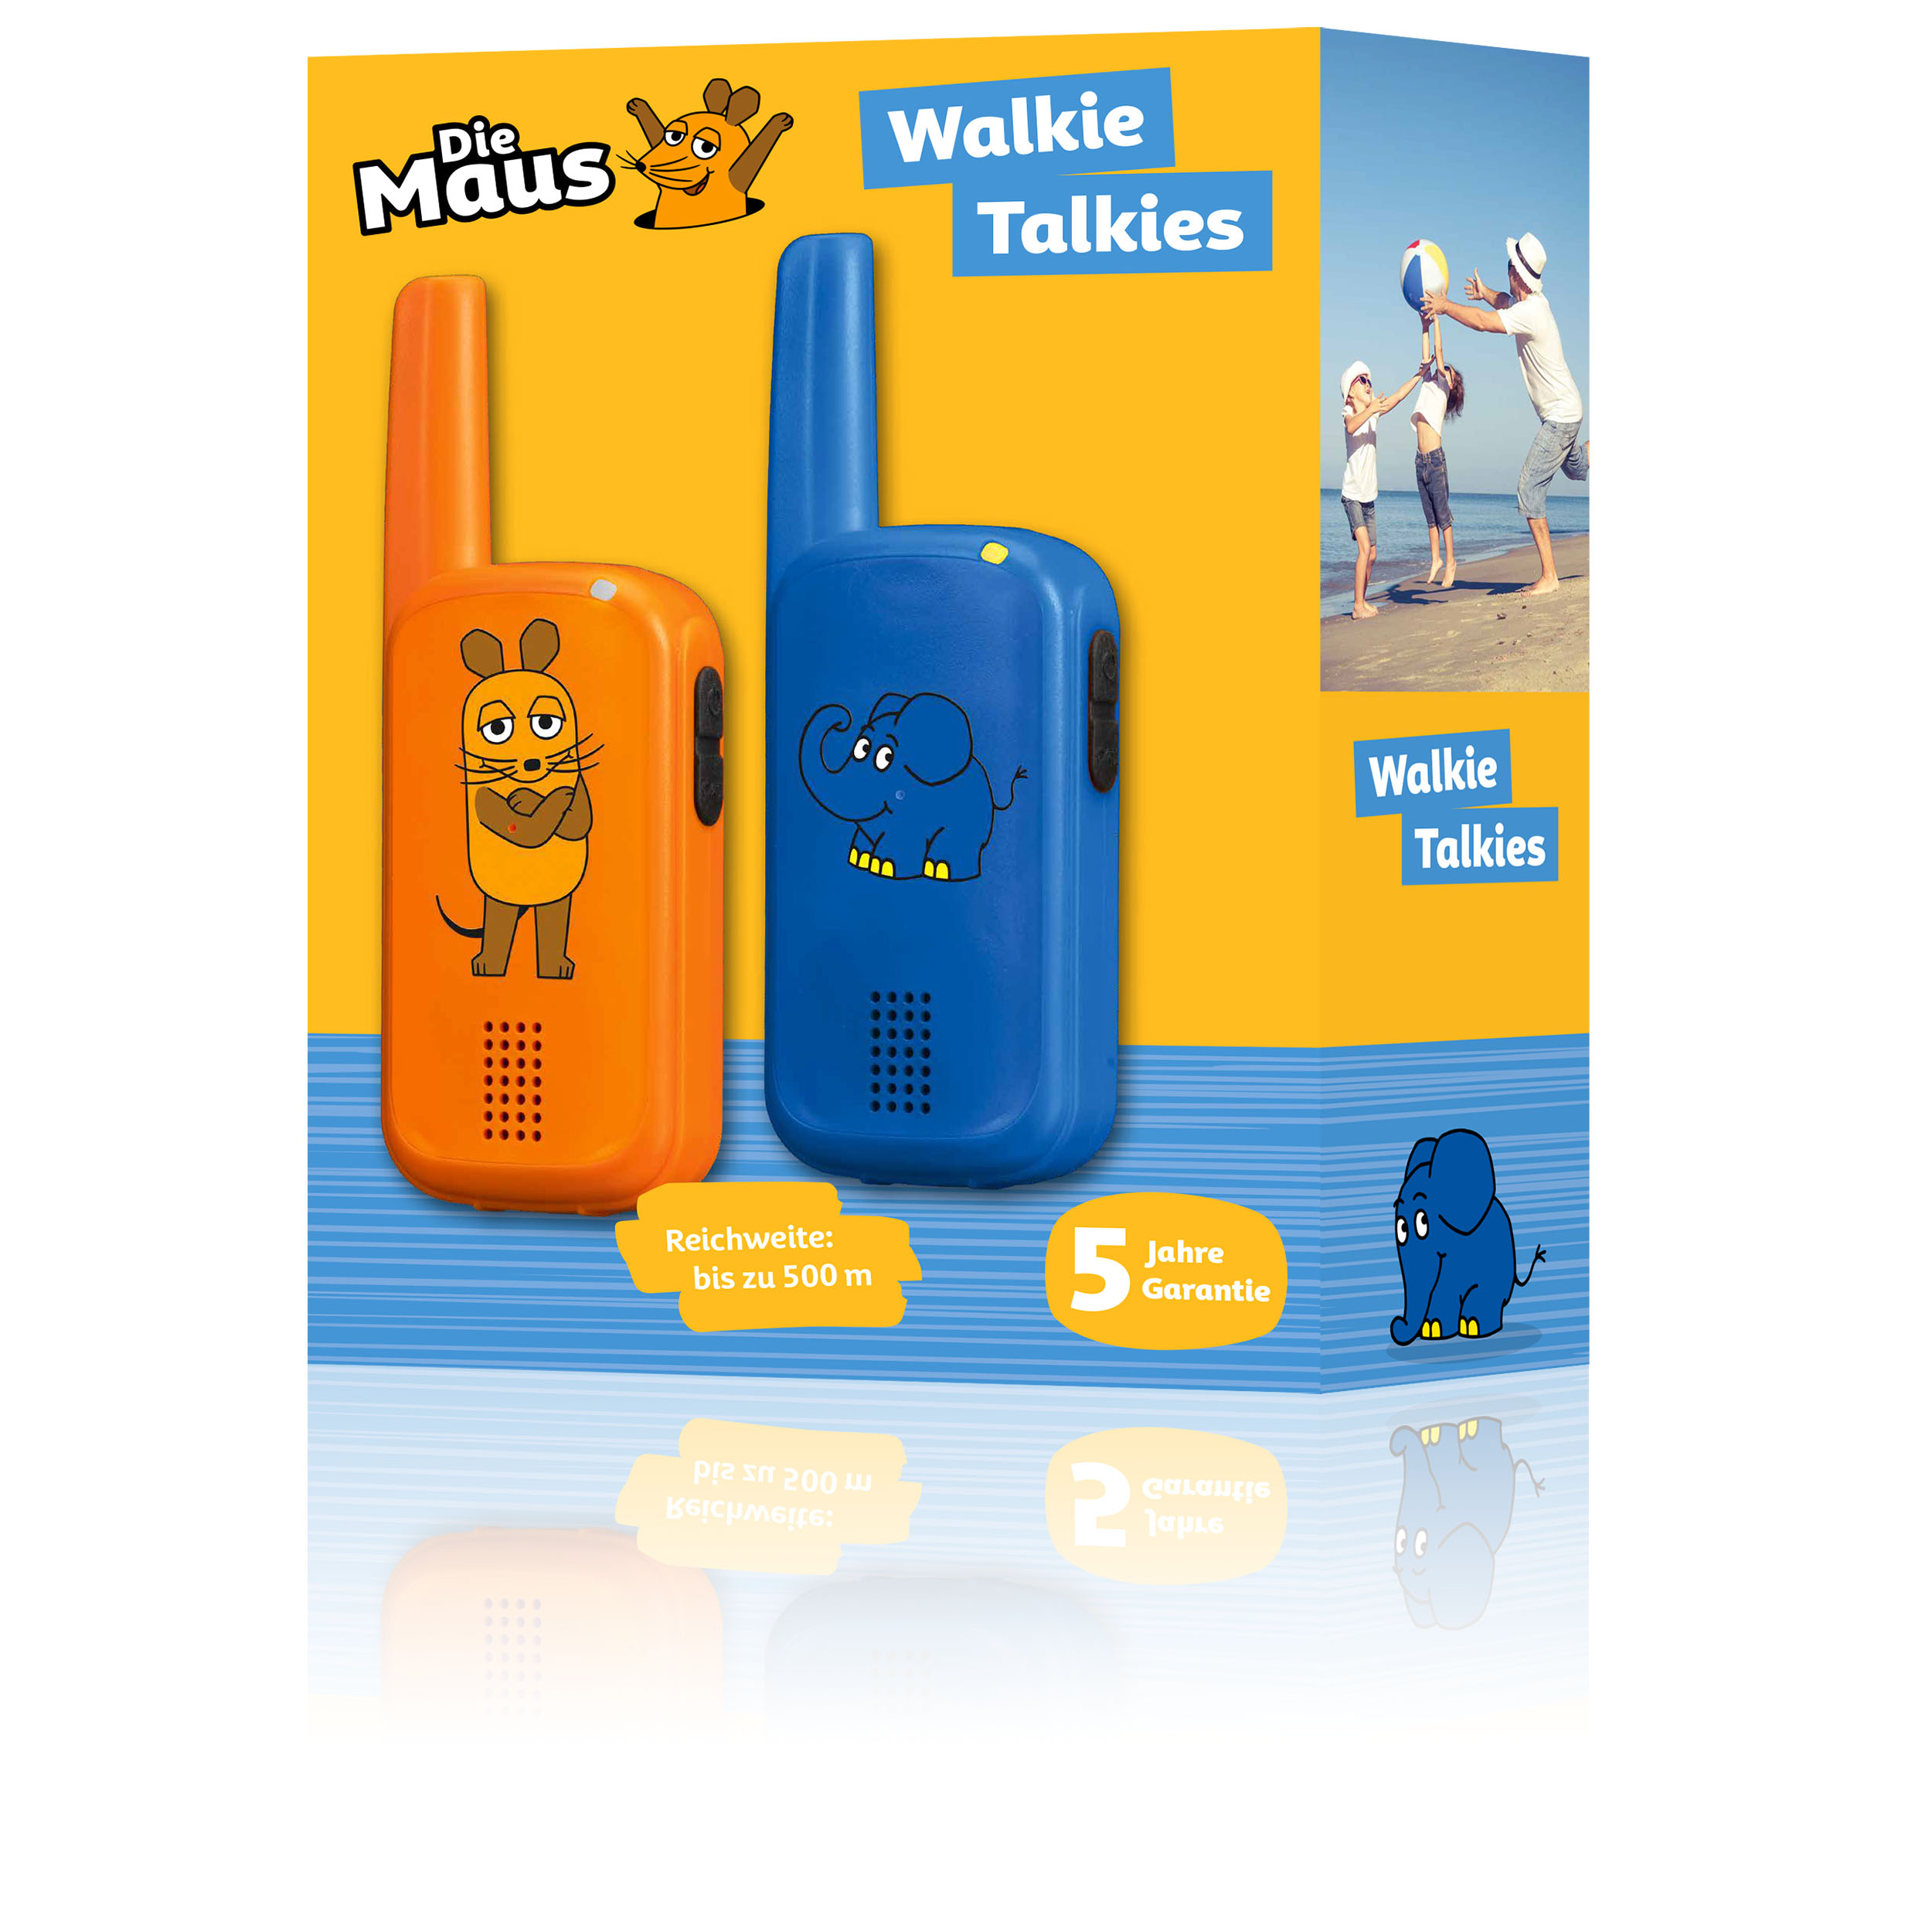 DieMaus Walkie-Talkies for Kids